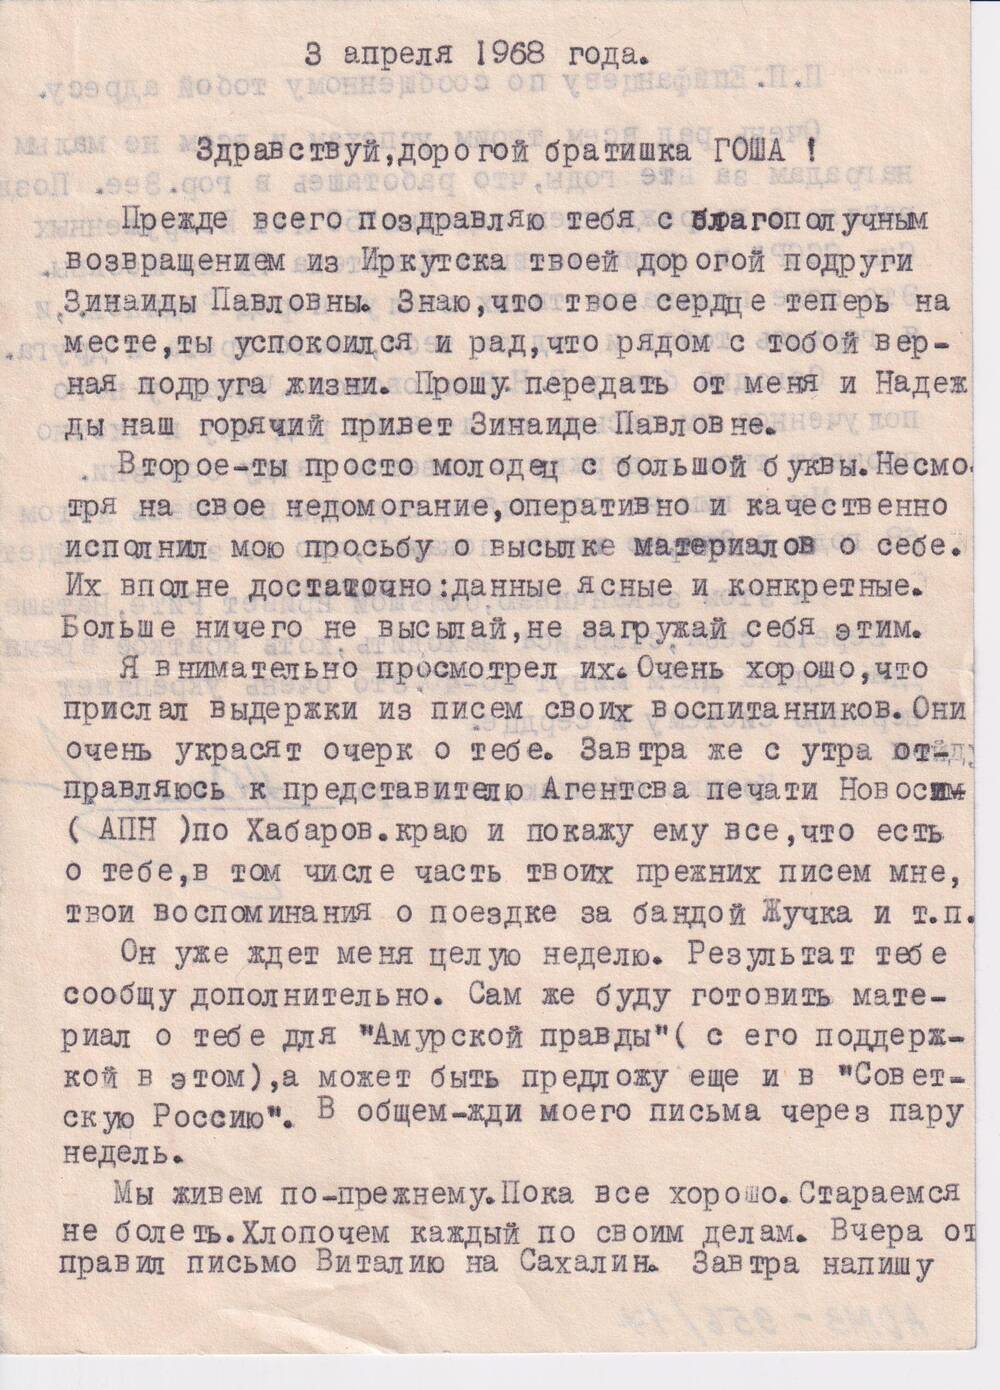 Письмо Конзе  Георгию Александровичу от А. Оглы  - соратника по борьбе.